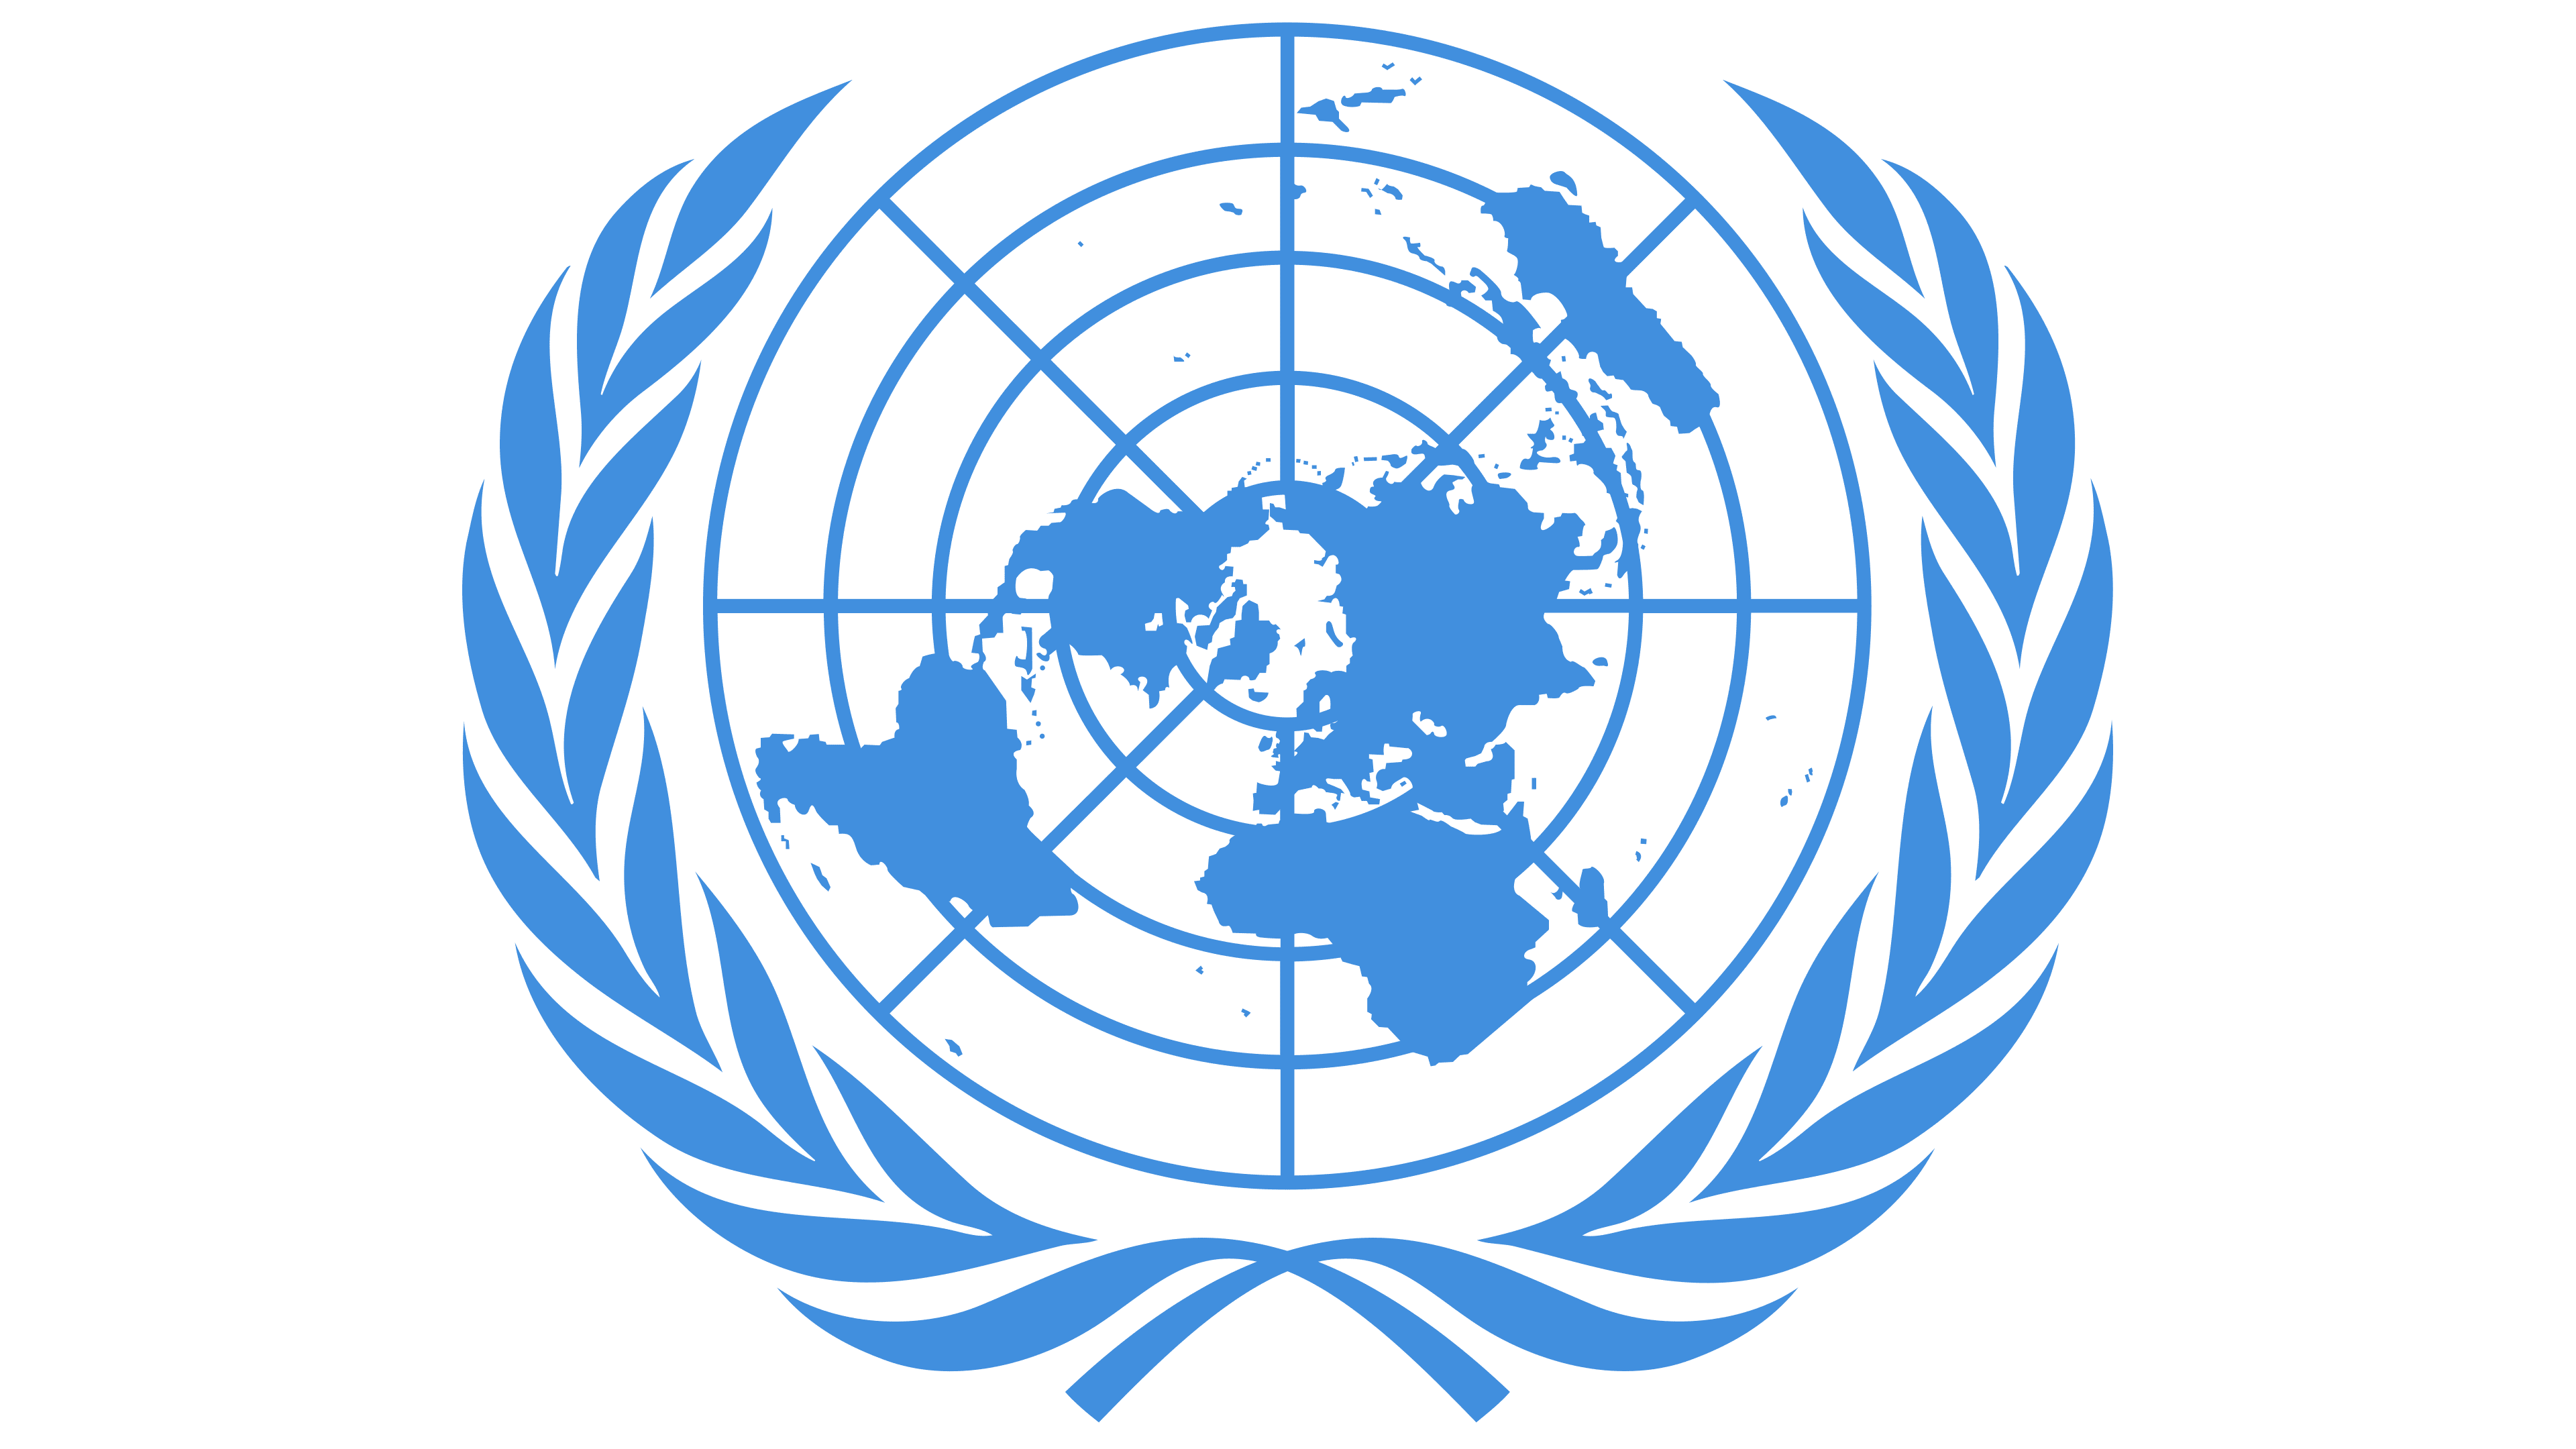 Оон 16. Генеральная Ассамблея ООН эмблема. Совет безопасности ООН эмблема. Европейская экономическая комиссия ООН (ЕЭК ООН). Логотип UNDP.